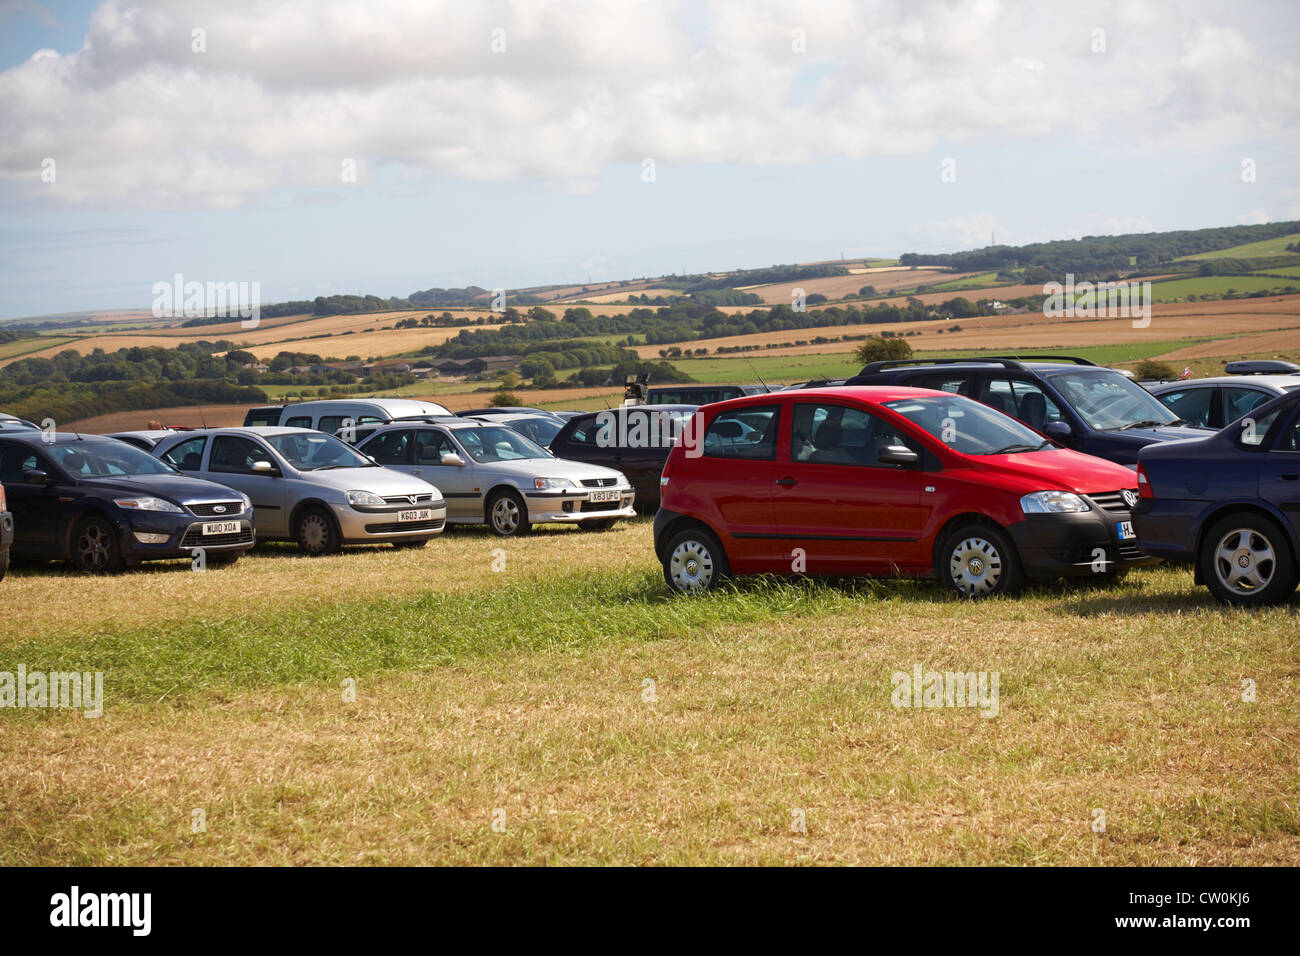 Automobili parcheggiate nel parcheggio e strada sito nella splendida campagna di Dorset per le gare di vela delle Olimpiadi di Weymouth nel mese di agosto Foto Stock